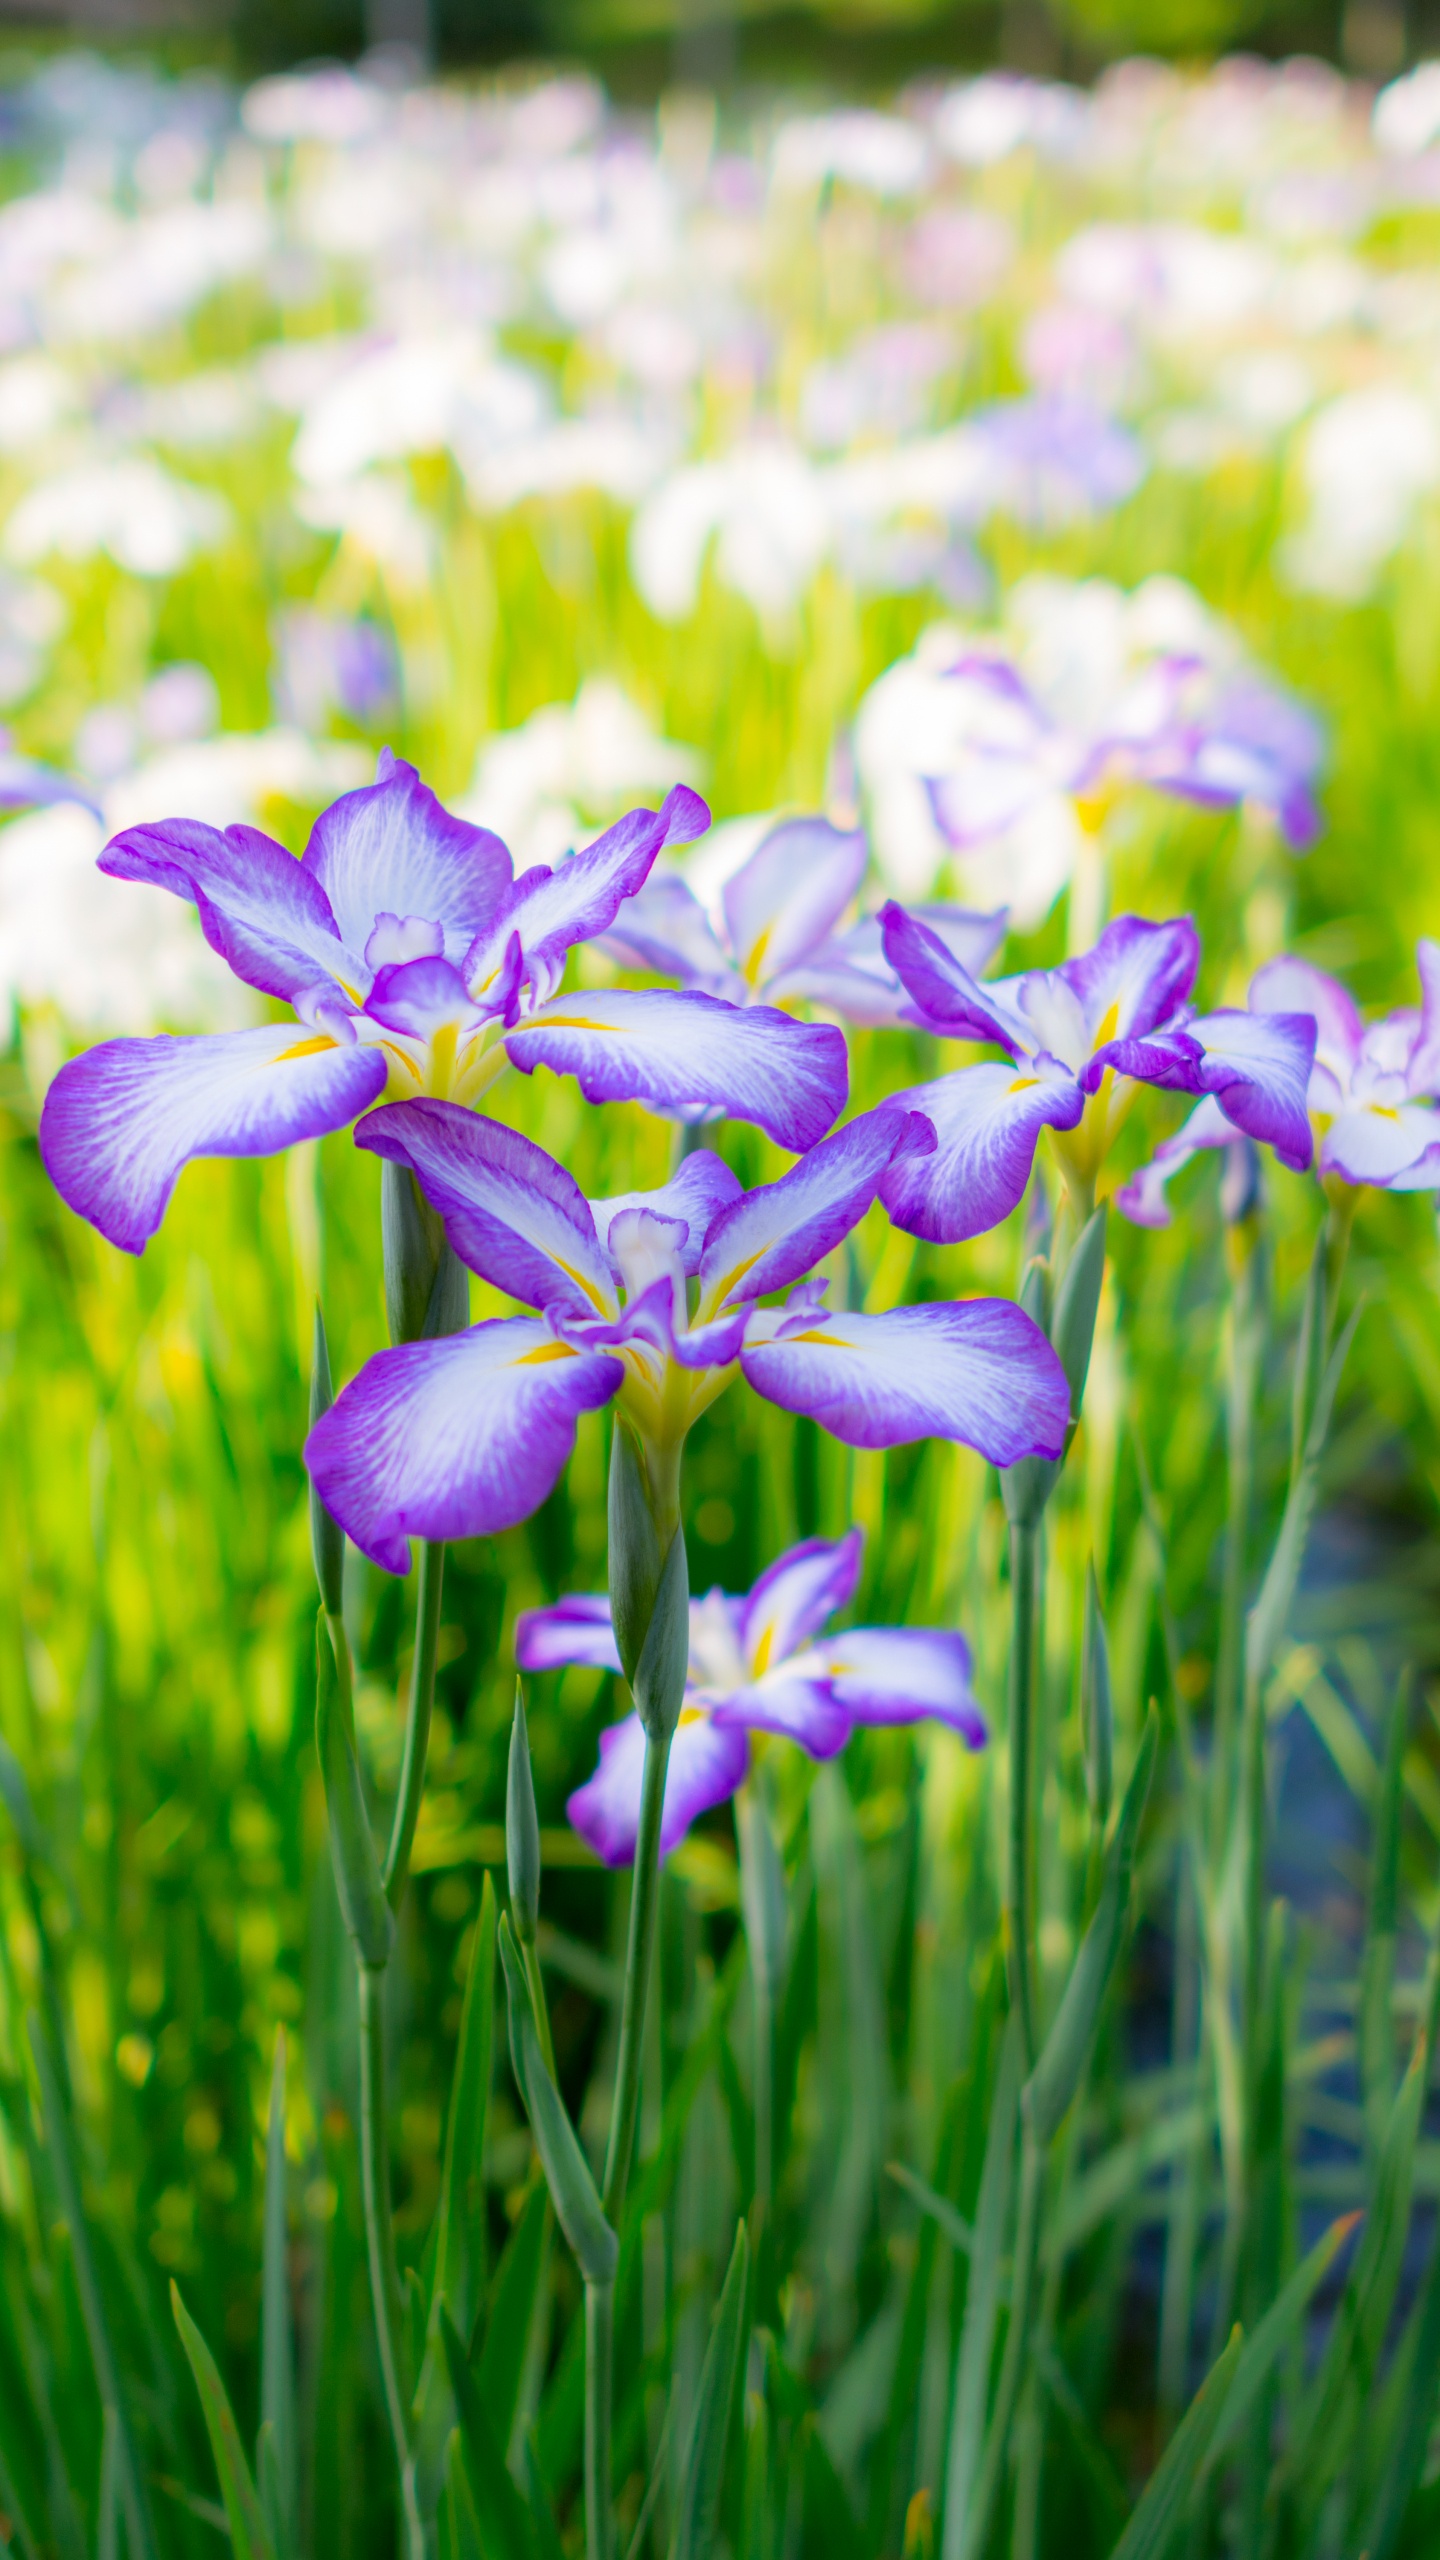 Purple and White Flowers in Tilt Shift Lens. Wallpaper in 1440x2560 Resolution